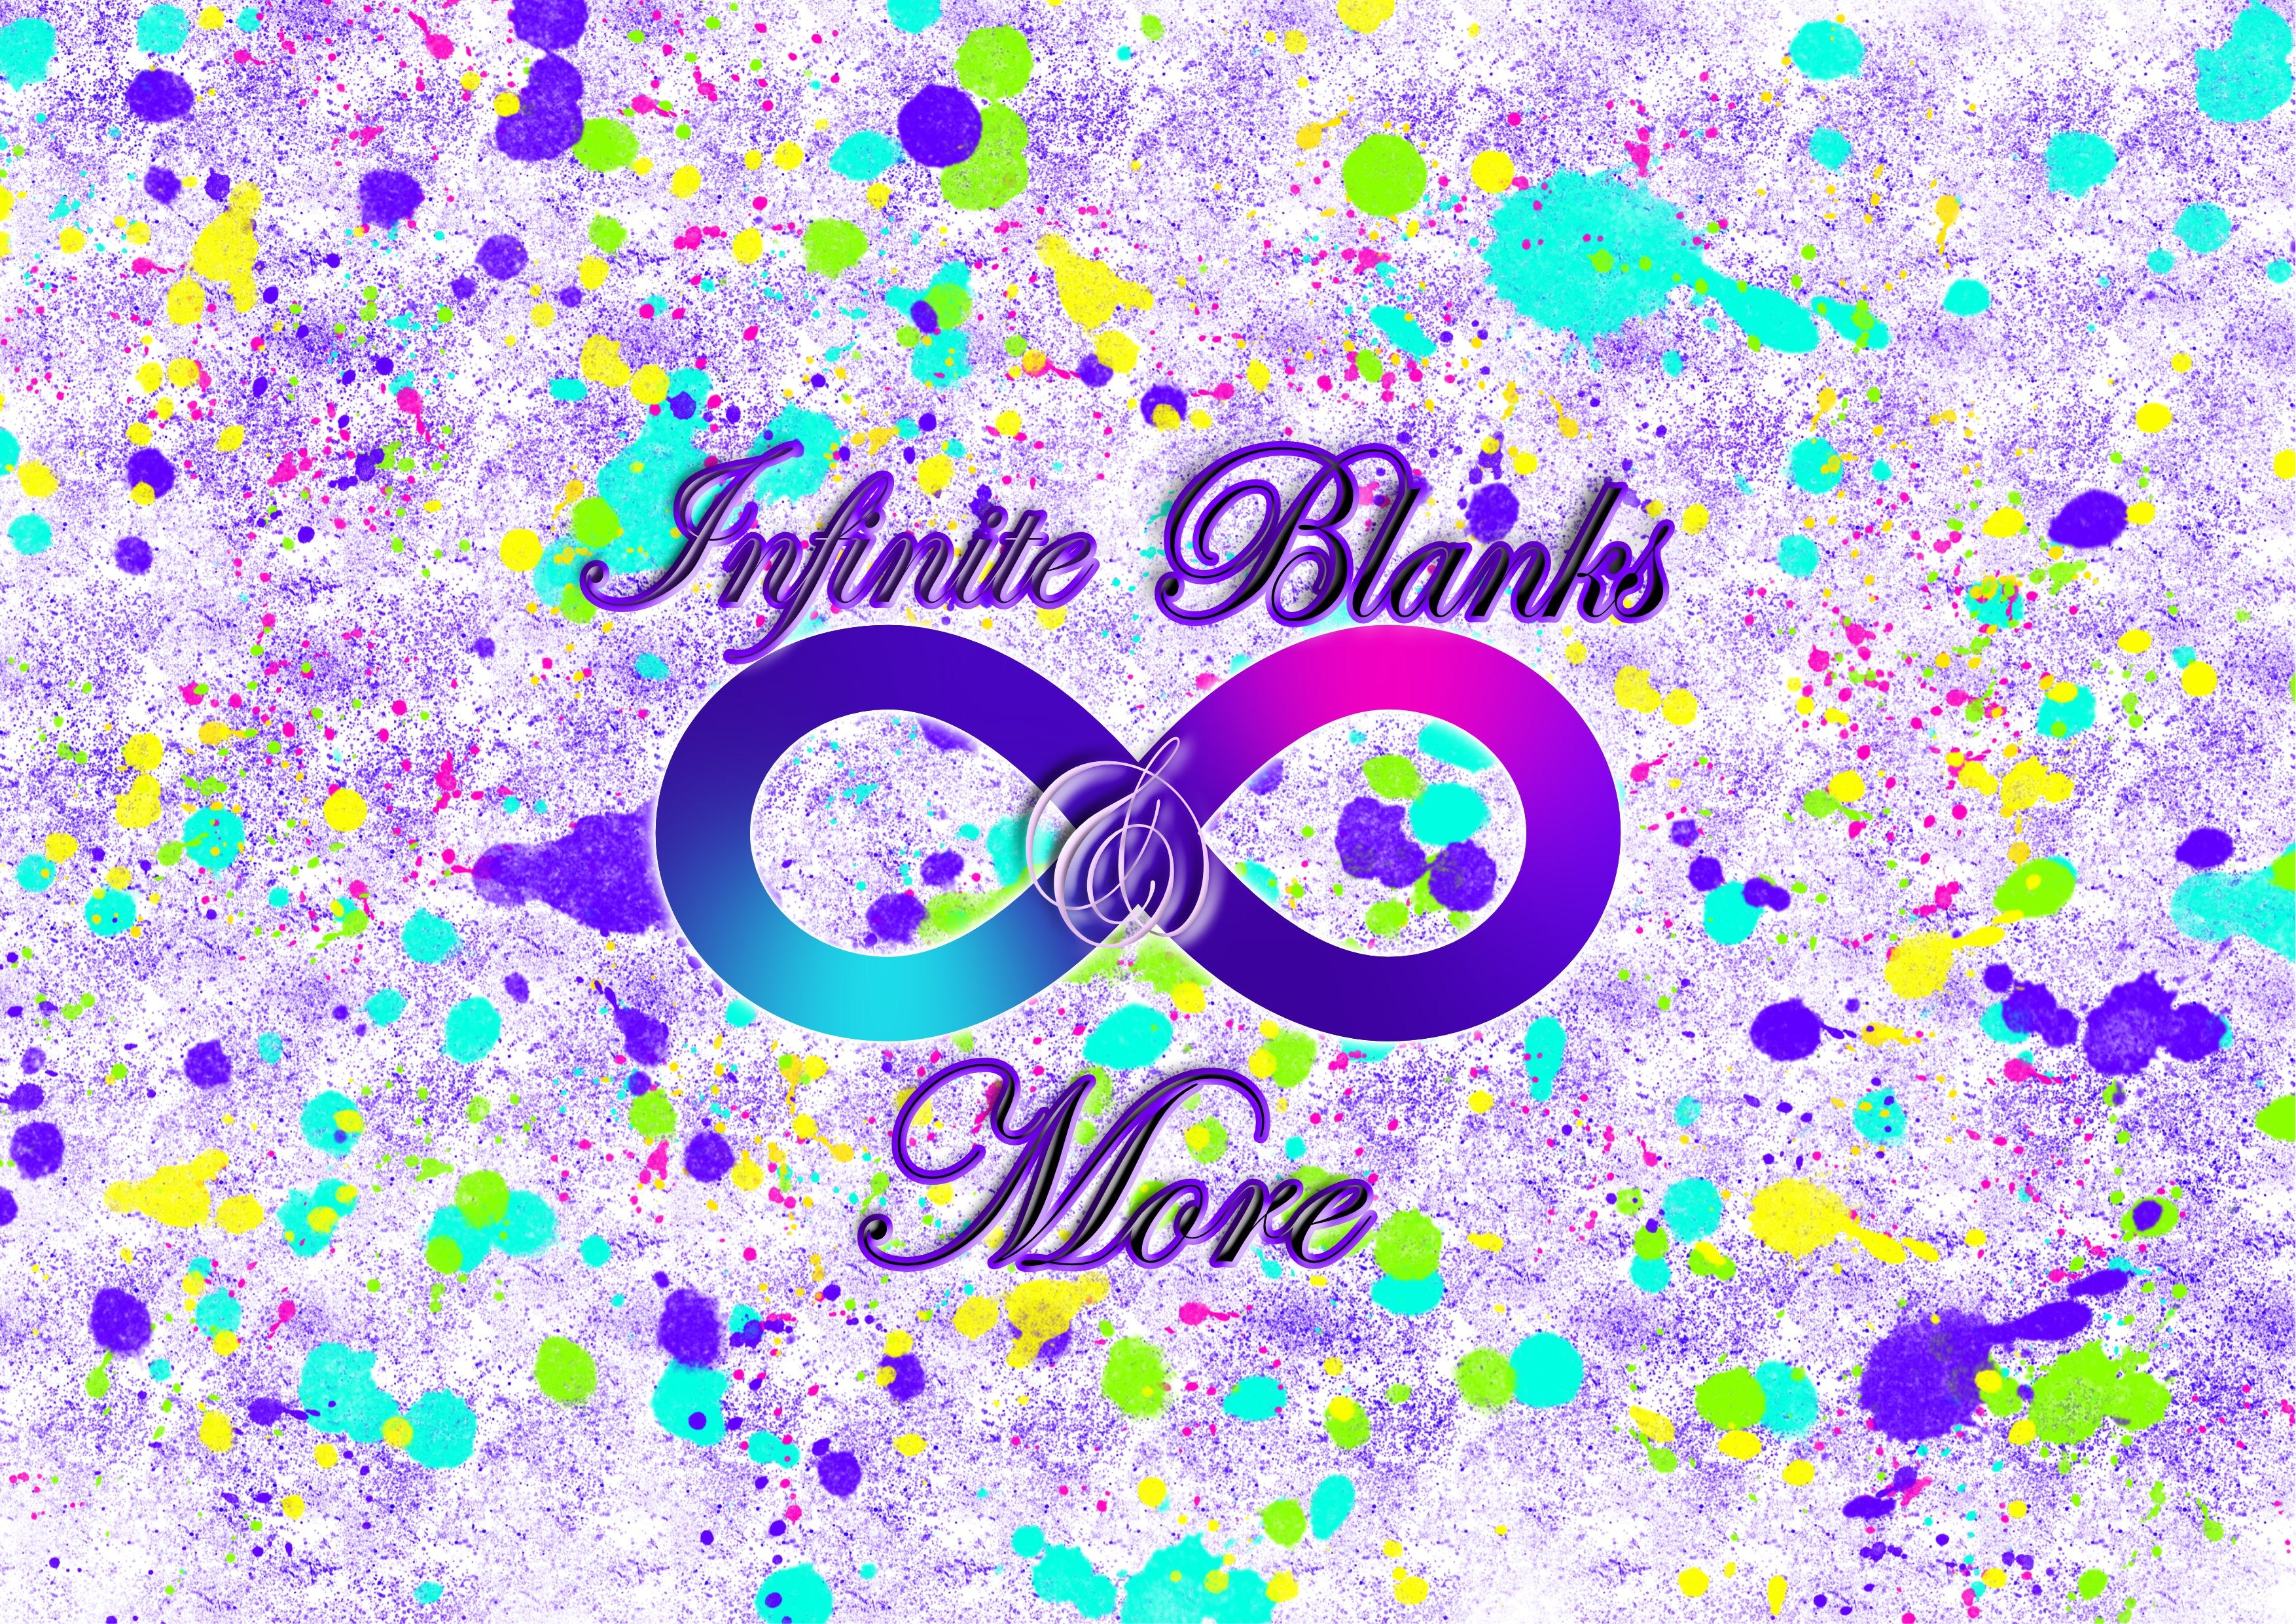 Infinite Blanks & More LLC